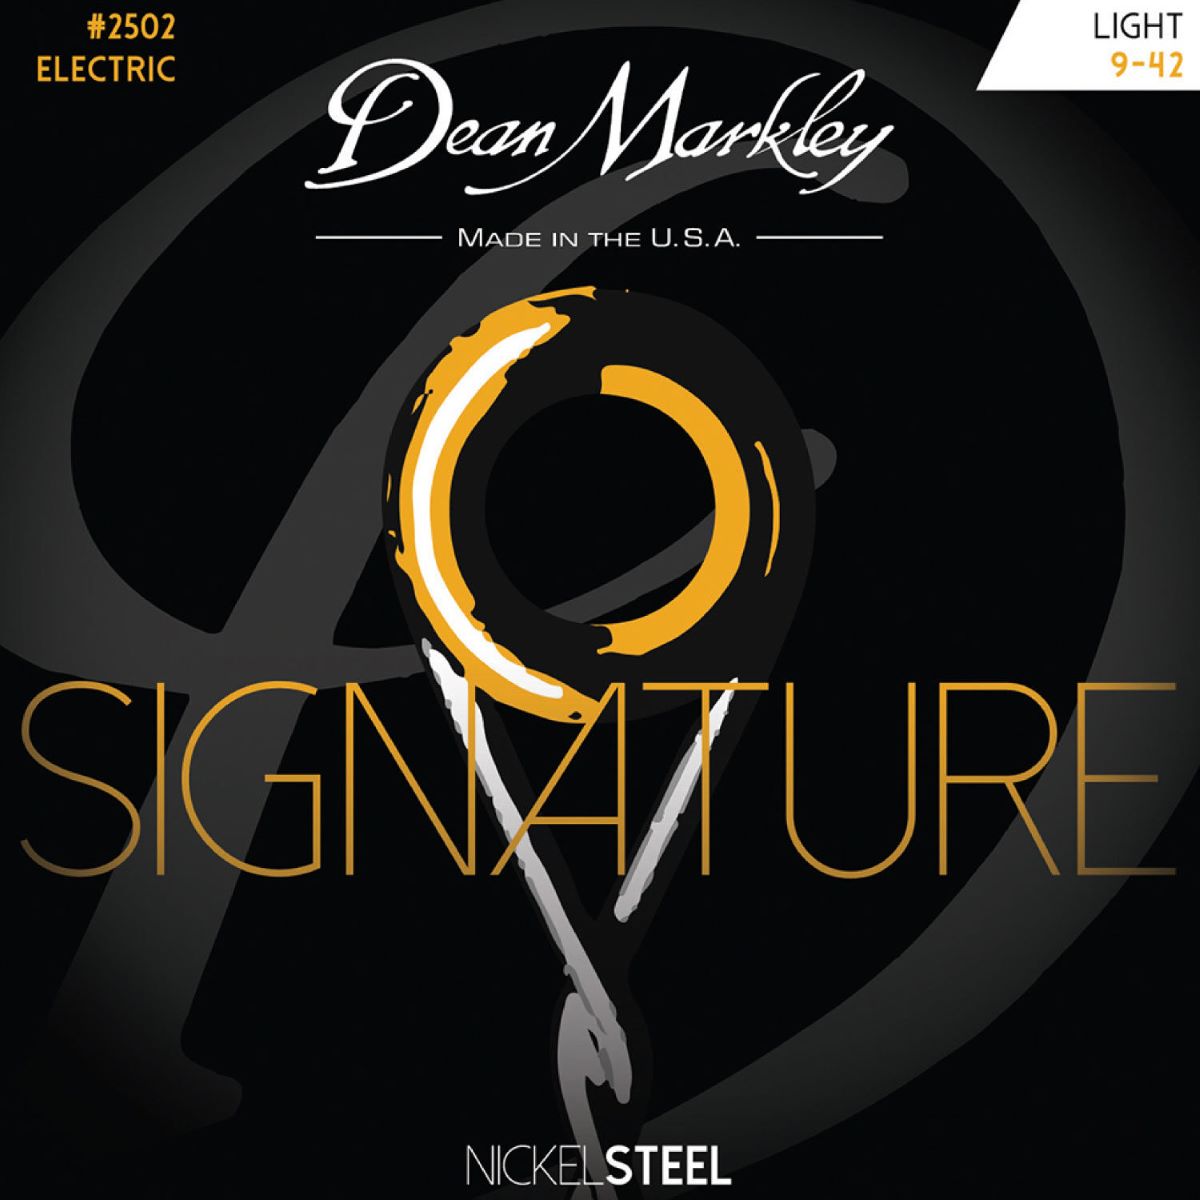 Dean Markley NICKEL STEEL Signature ライト 009-042 DM2502 ディーンマークレイ エレキギター弦 |  島村楽器オンラインストア